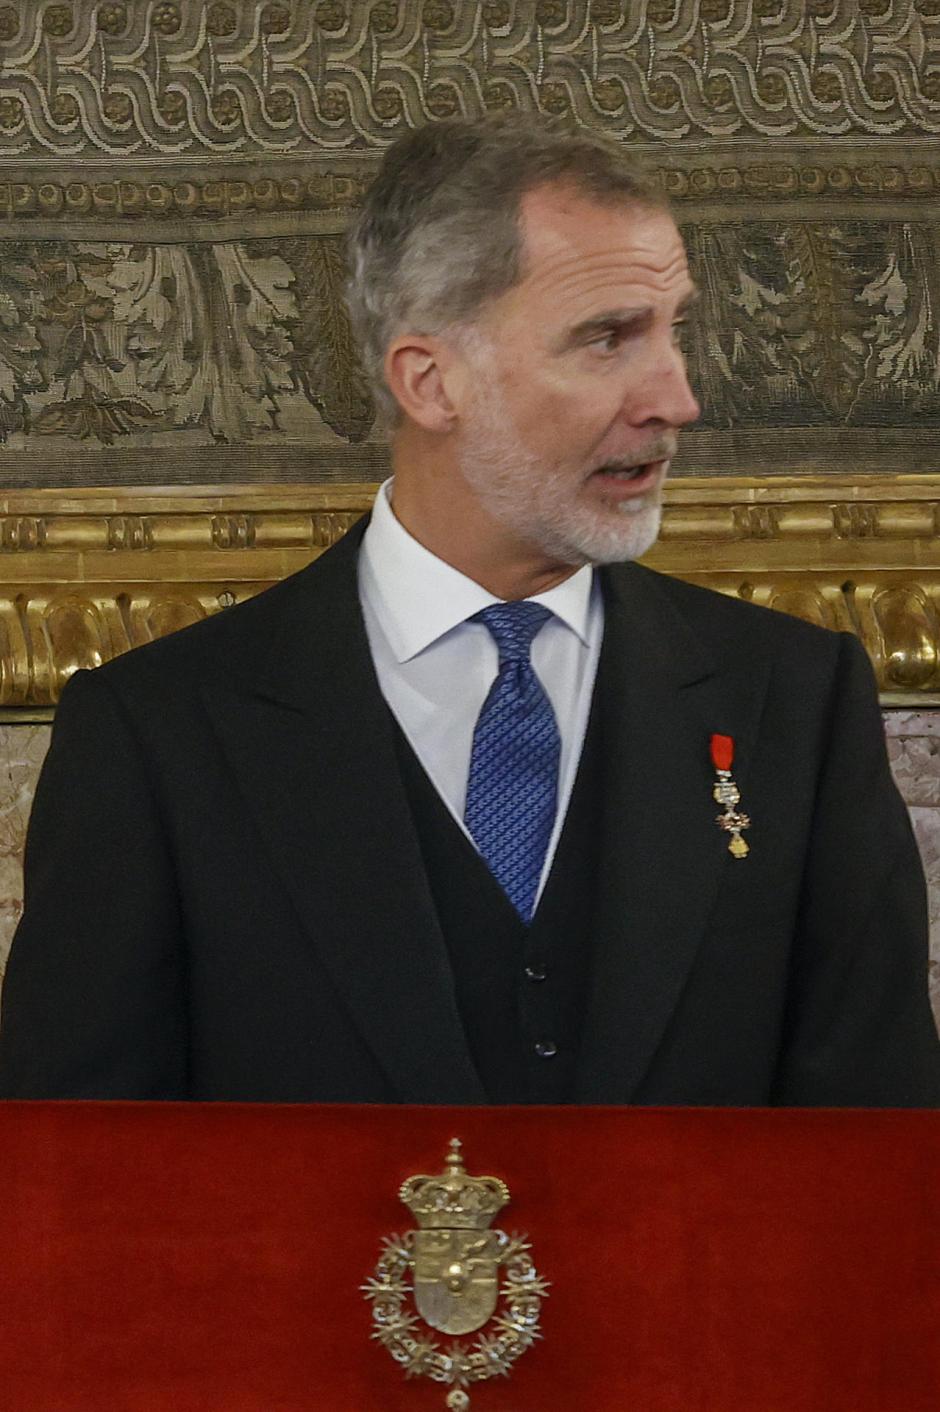 El Rey Felipe pronuncia un discurso previo al almuerzo celebrado en el Comedor de Gala del Palacio Real tras la jura de la Constitución de la Princesa de Asturias